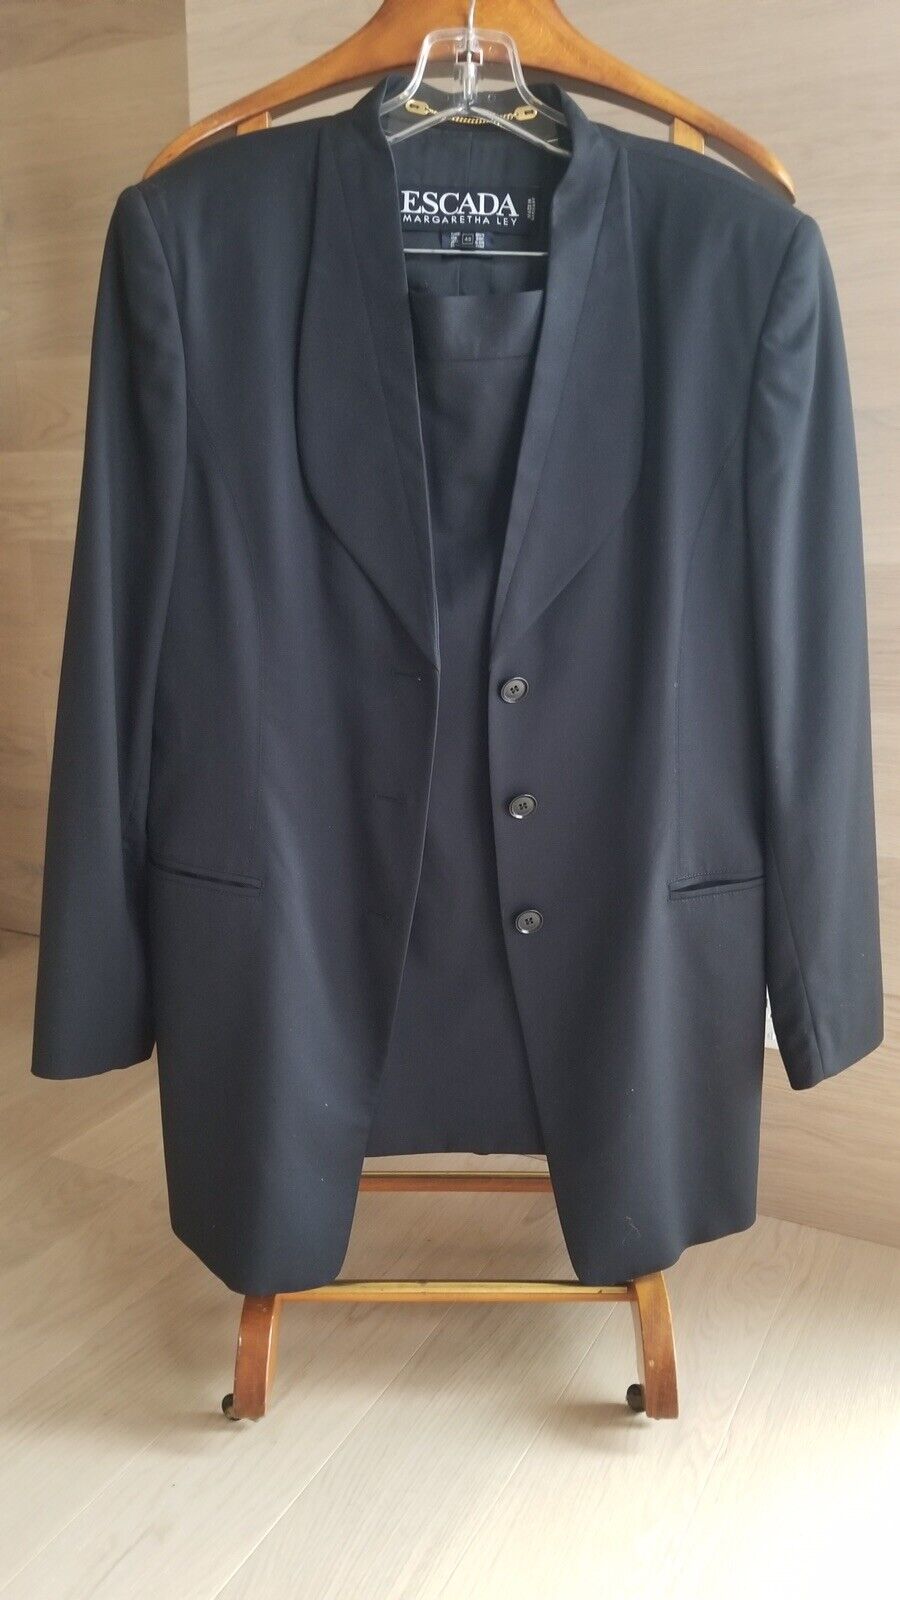 Escada Margaretha Ley Wool Black Suit Long Blazer 42 Skirt 40 Germany Used